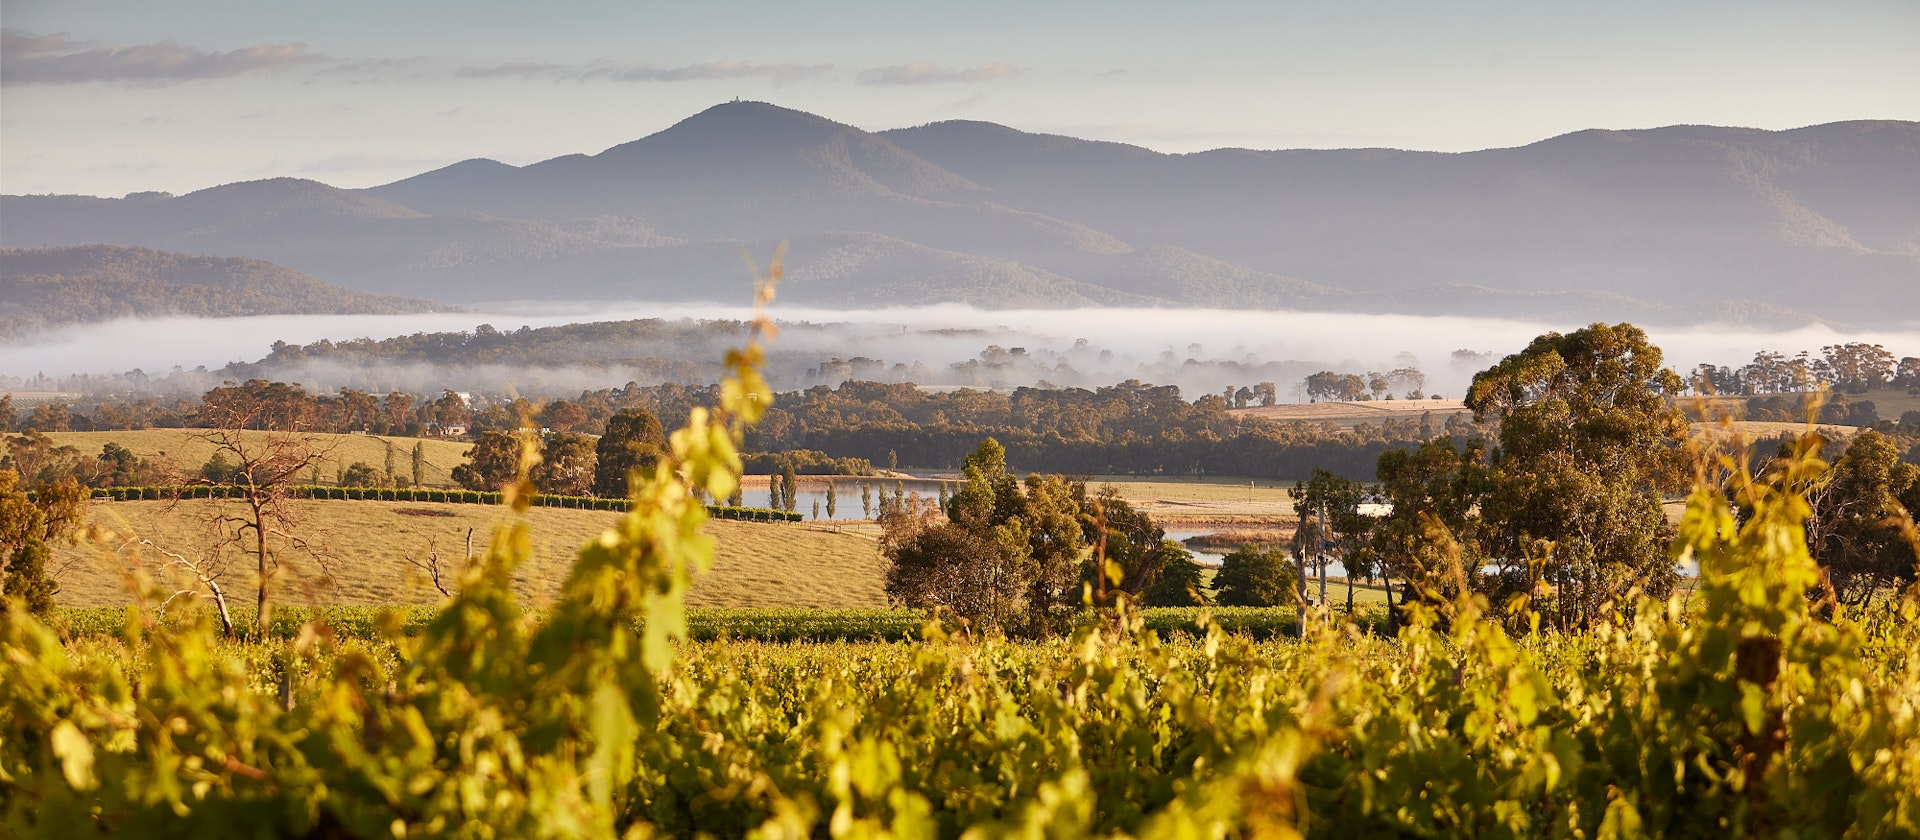 Landscape shot of yarra valley vineyards